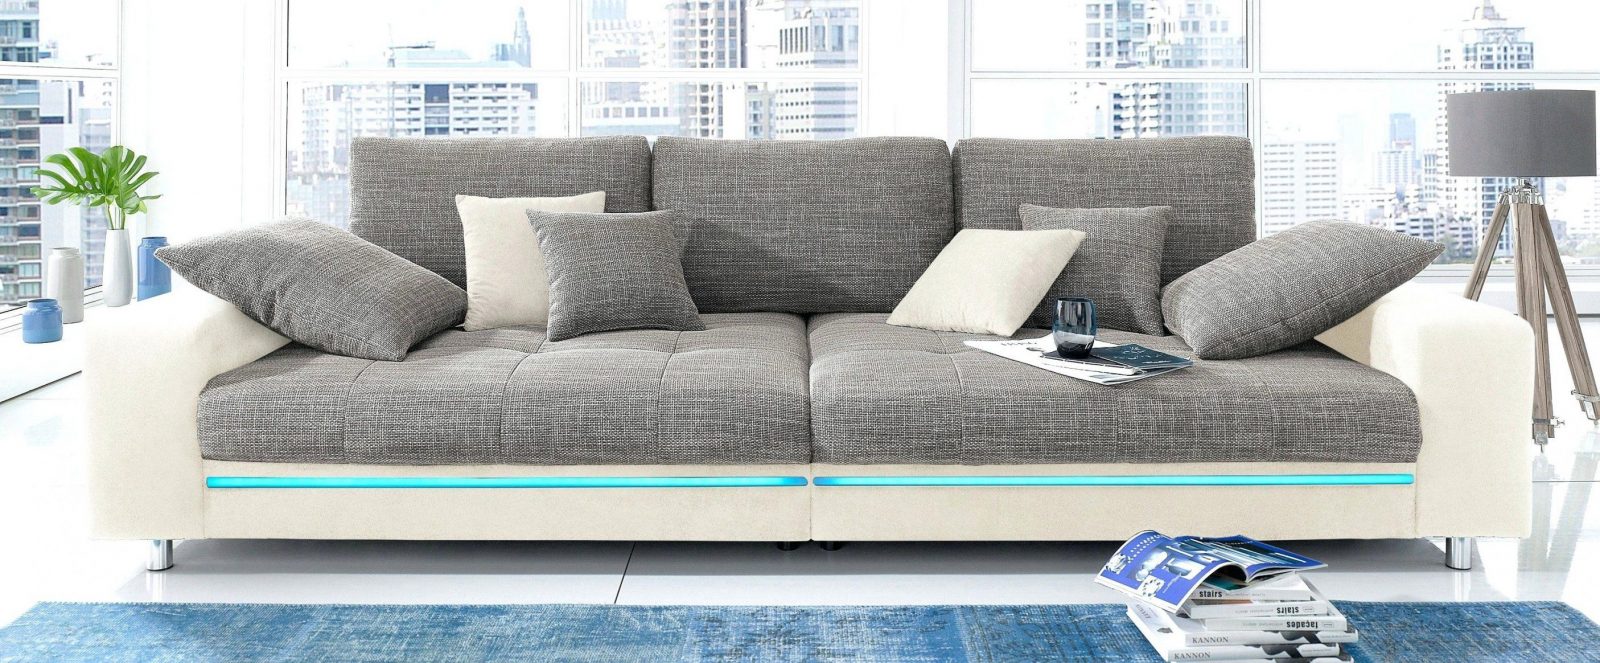 Faszinierend Sofa 3 Meter Breit Sofa 3 Meter Breit 3 4 Couch 3 Meter von Sofa 3 Meter Breit Photo